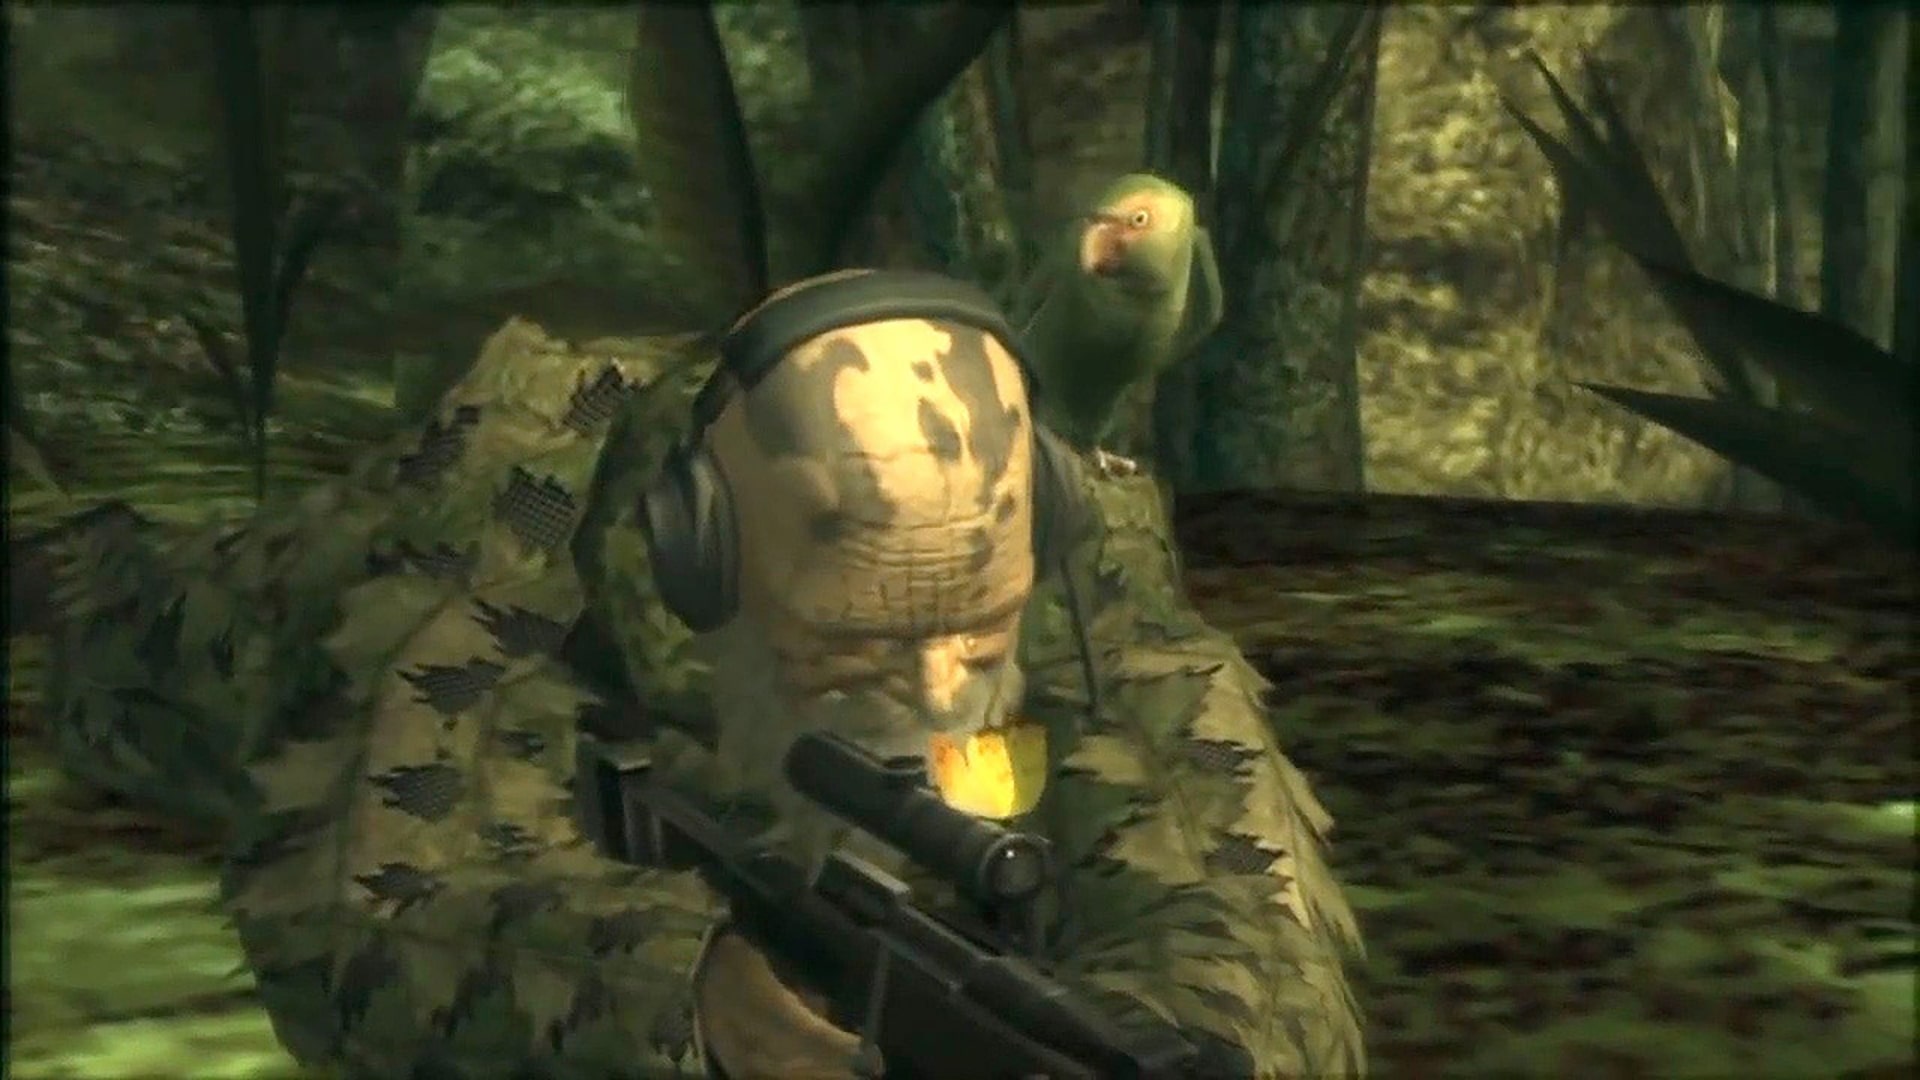 تصویر شخصیت The End در بازی Metal Gear Solid 3:Snake Eater